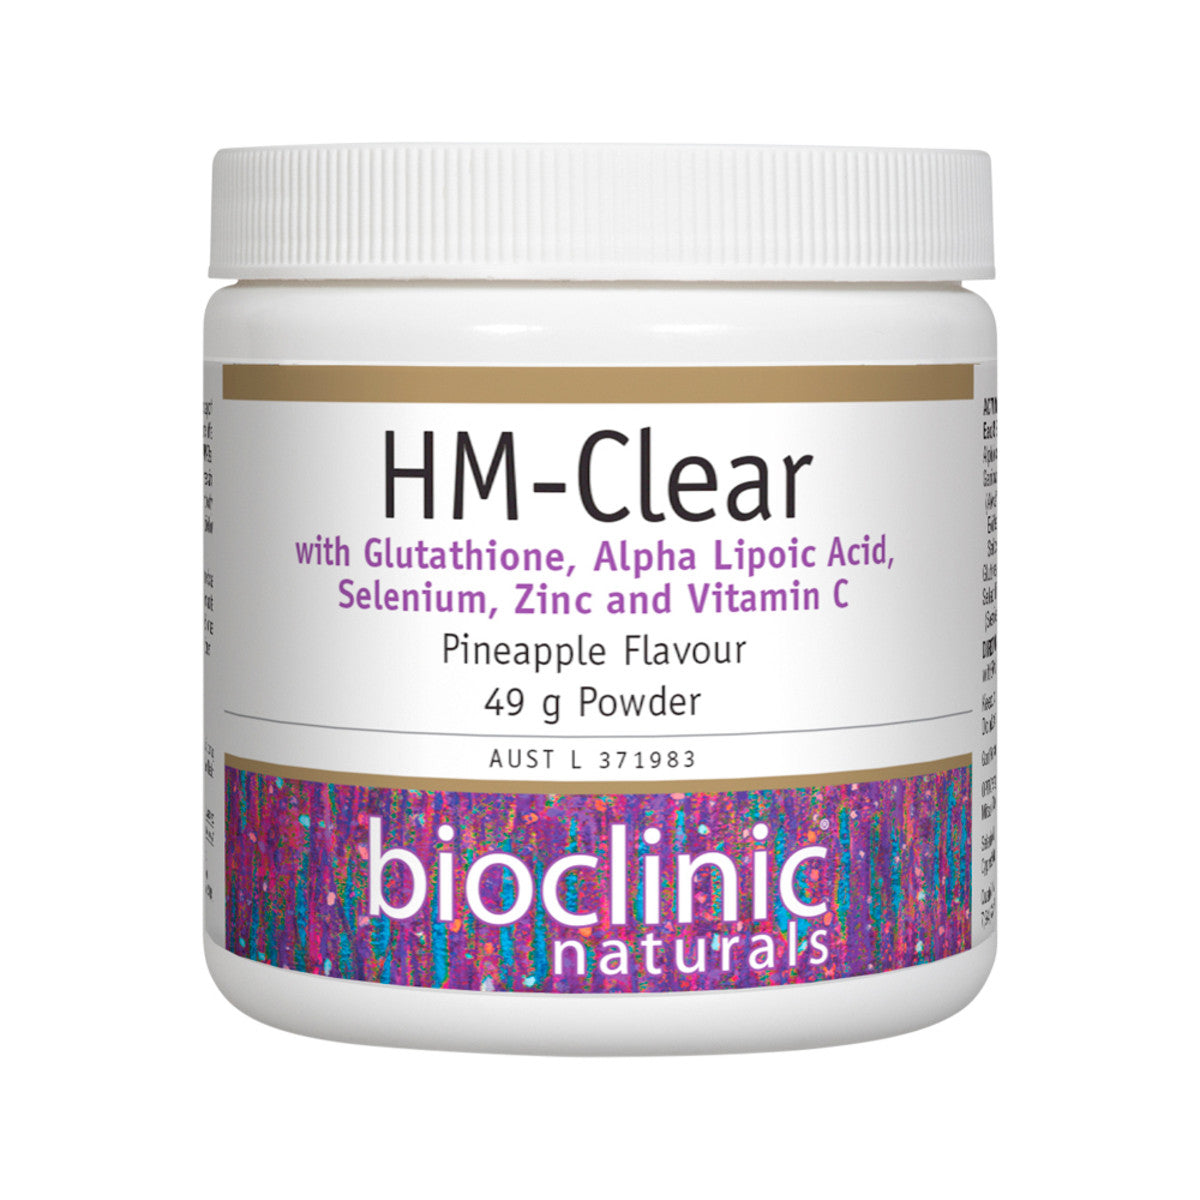 HM-Clear 49g powder